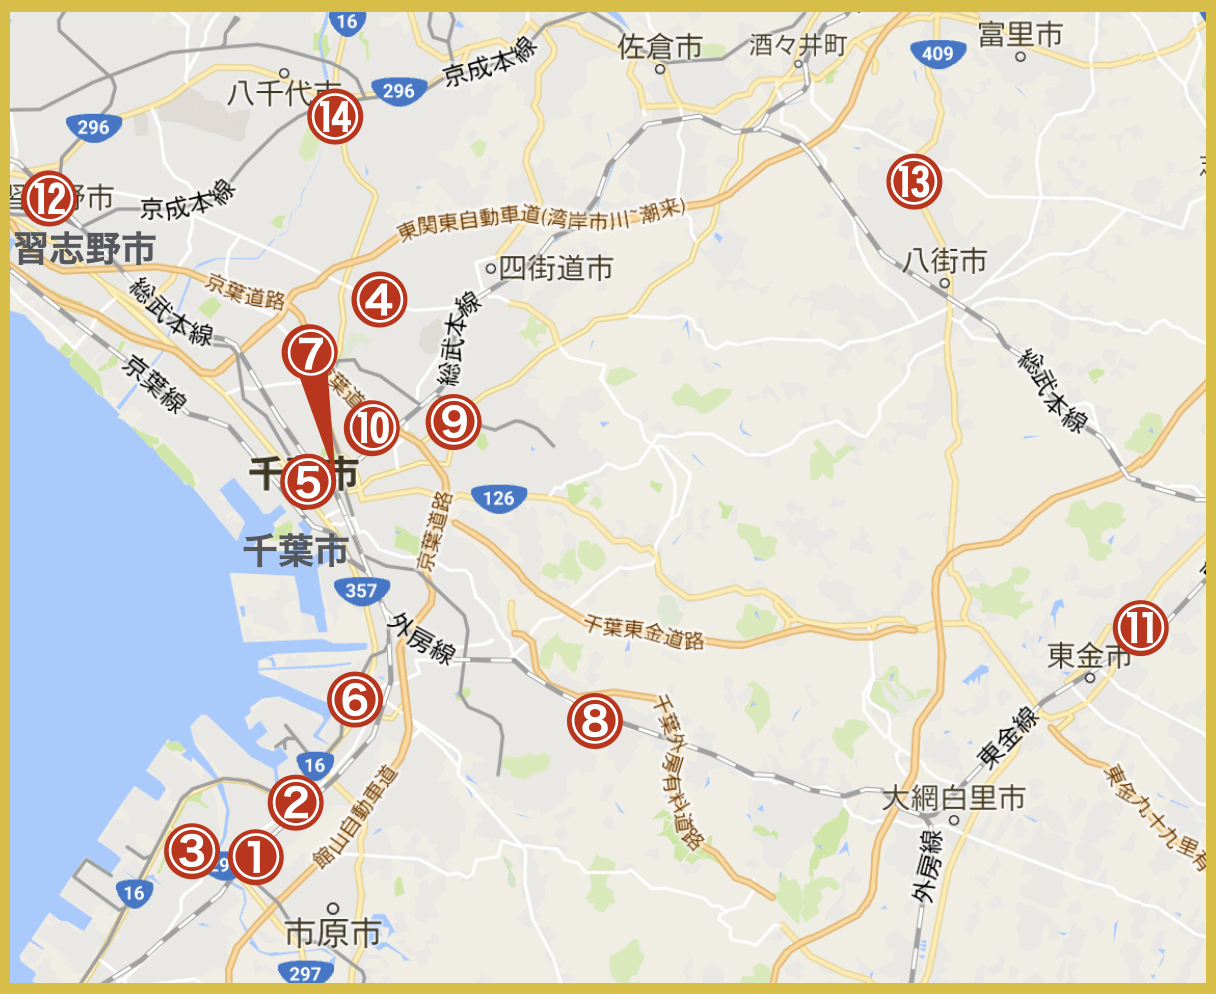 千葉県中央地域にあるアイフル店舗・ATMの位置（2020年版）